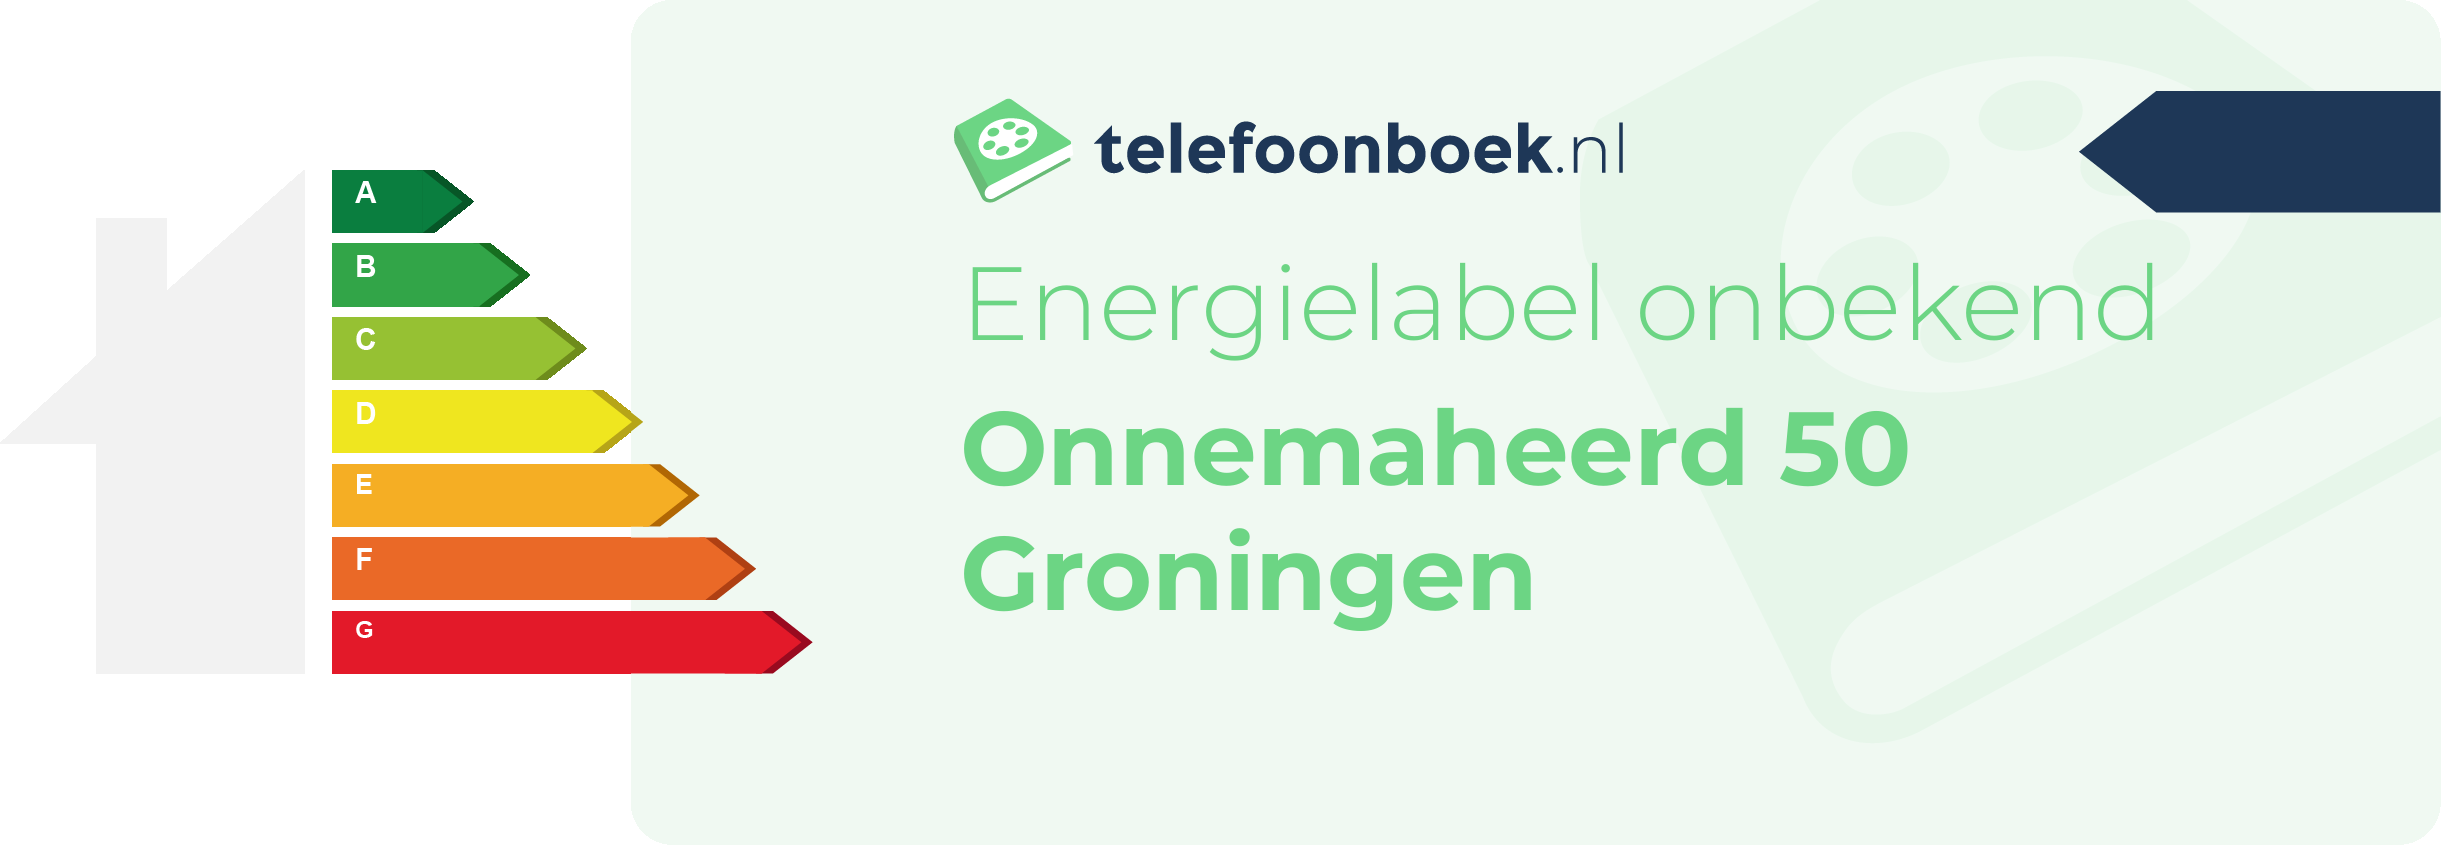 Energielabel Onnemaheerd 50 Groningen